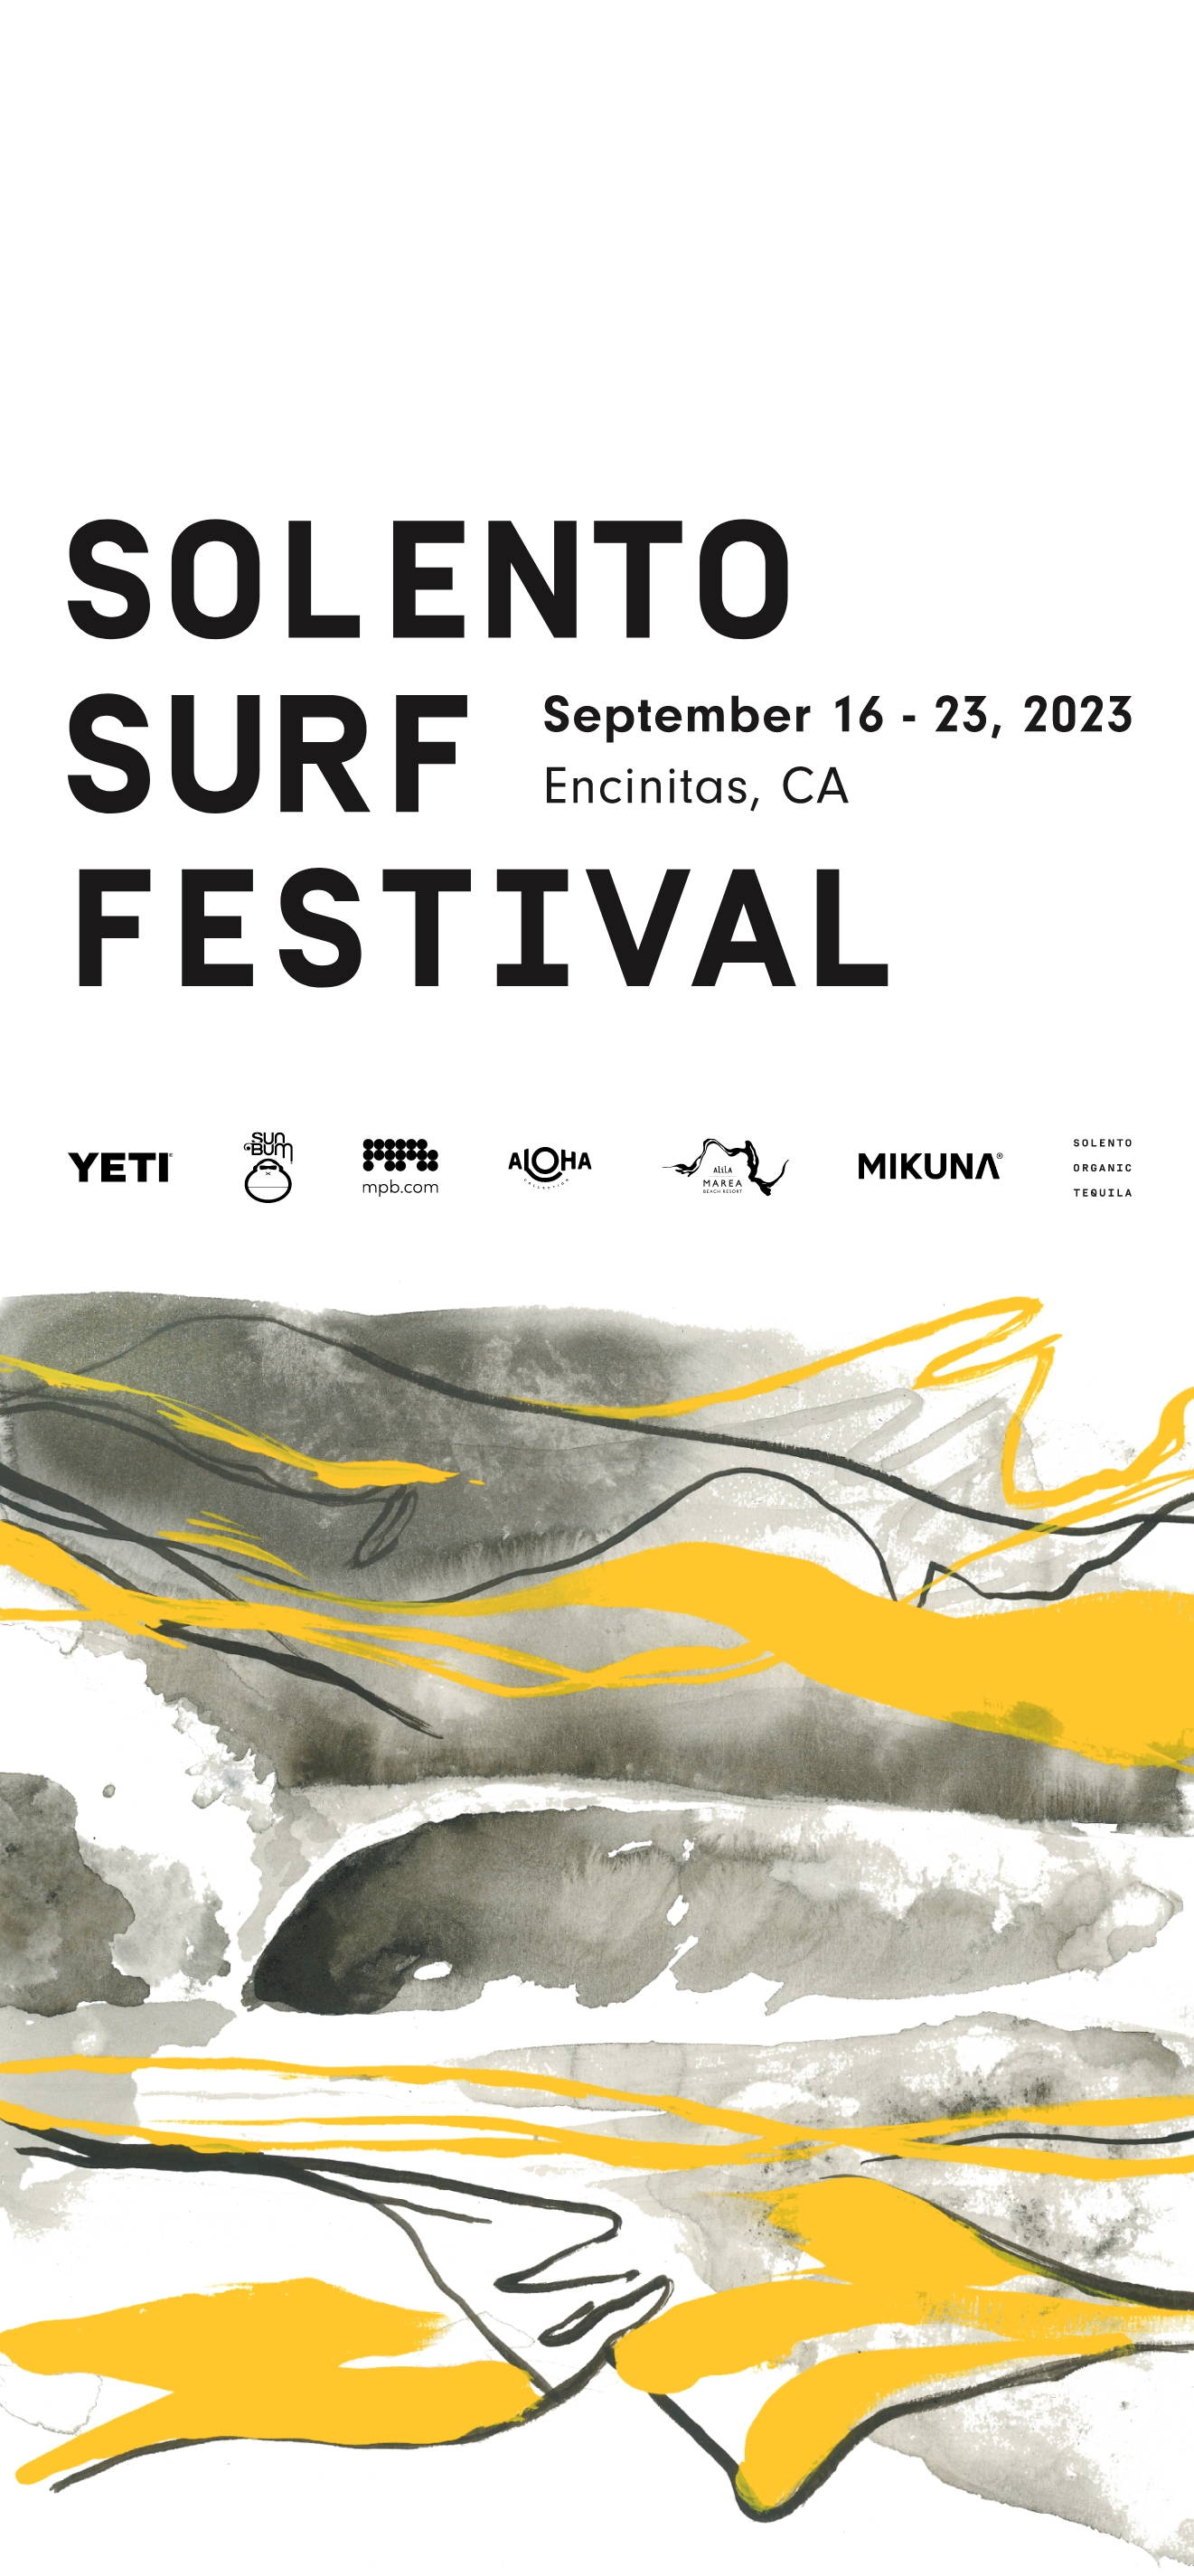 Solento Surf Festival September 16-23, 2023, Encinitas, CA